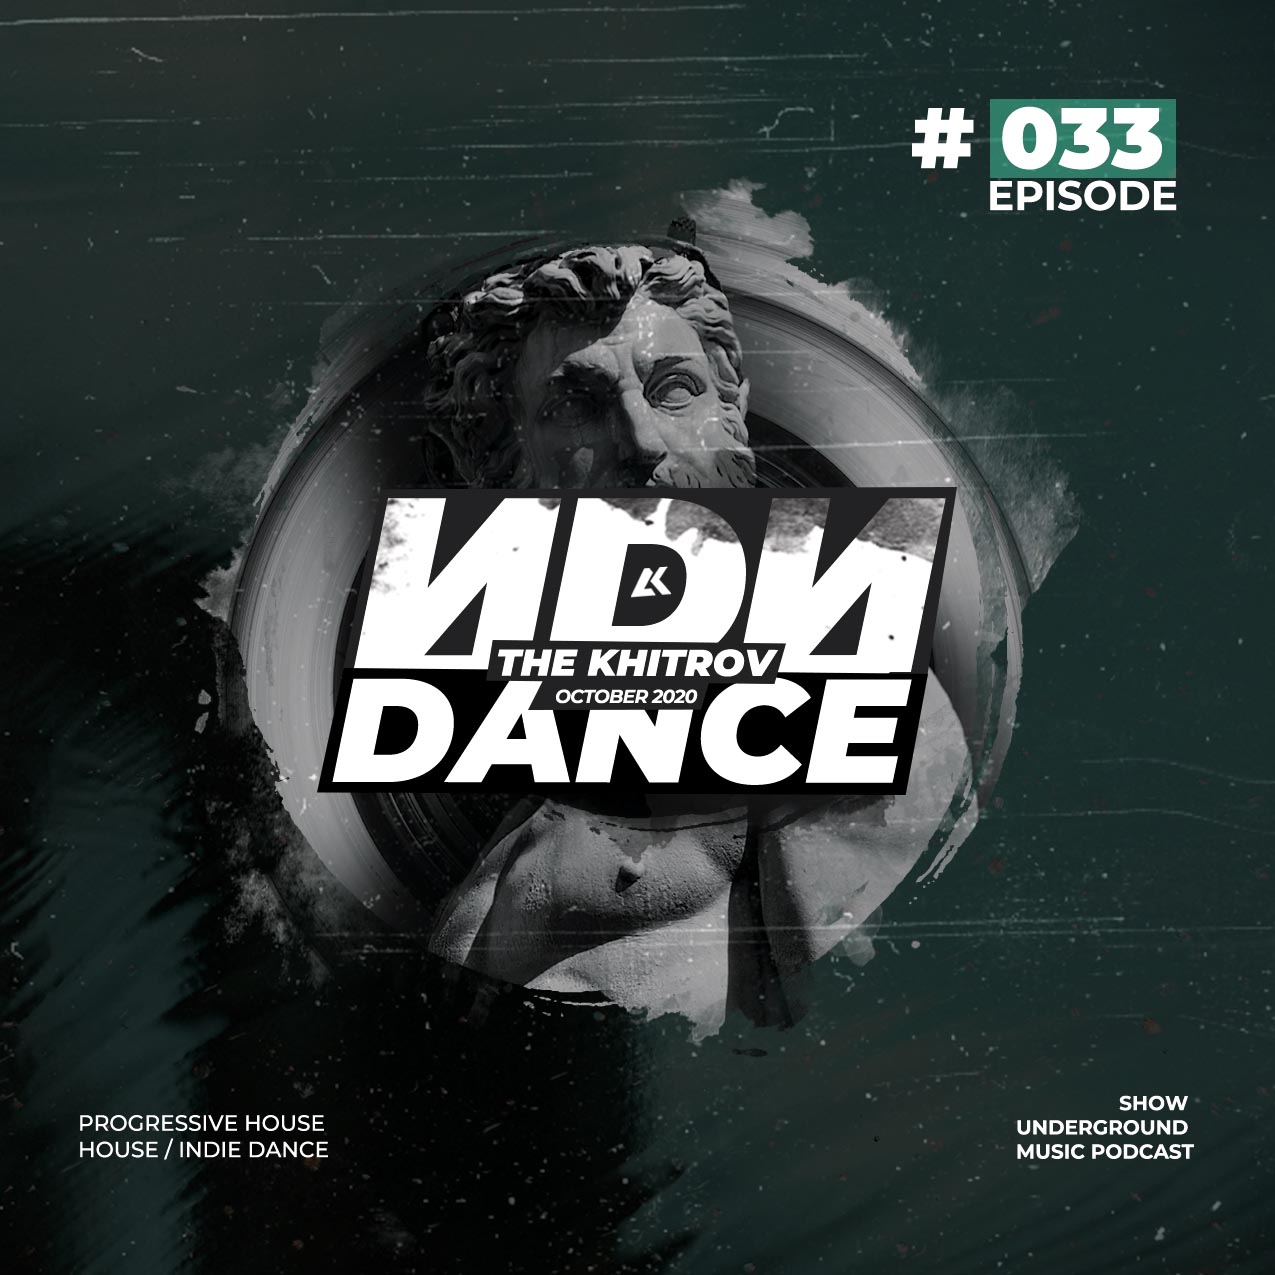 The Khitrov - ИDИ DANCE (Episode 33)